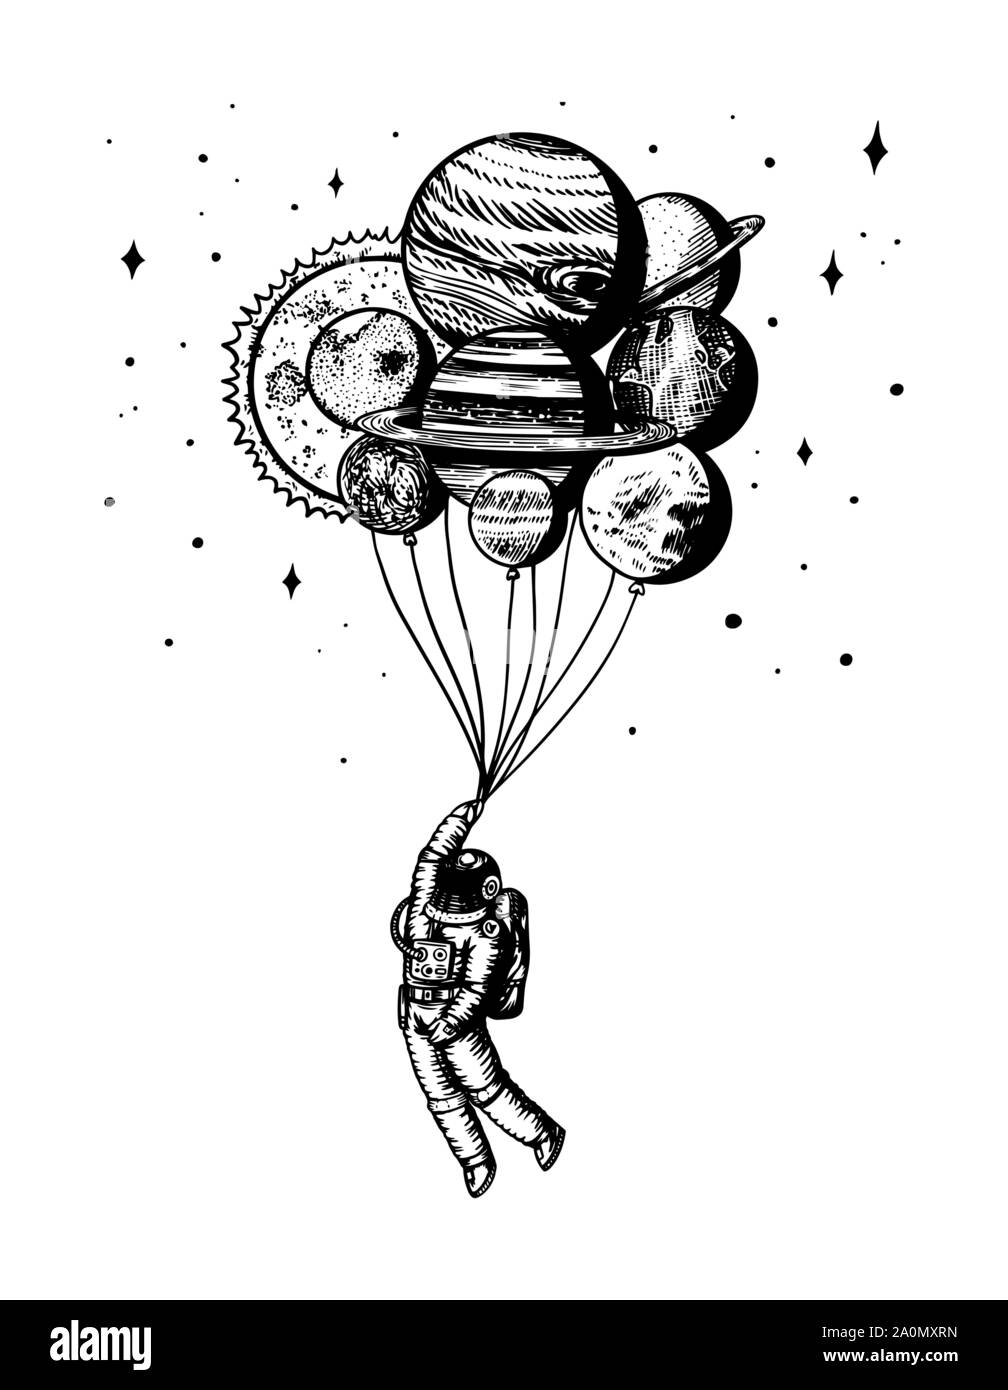 Planeur Spaceman. Astronaute de planètes. Ballons dans l'espace. L'homme dans le système solaire. Vieux croquis dessinés à la main, gravée dans un style vintage. Illustration de Vecteur